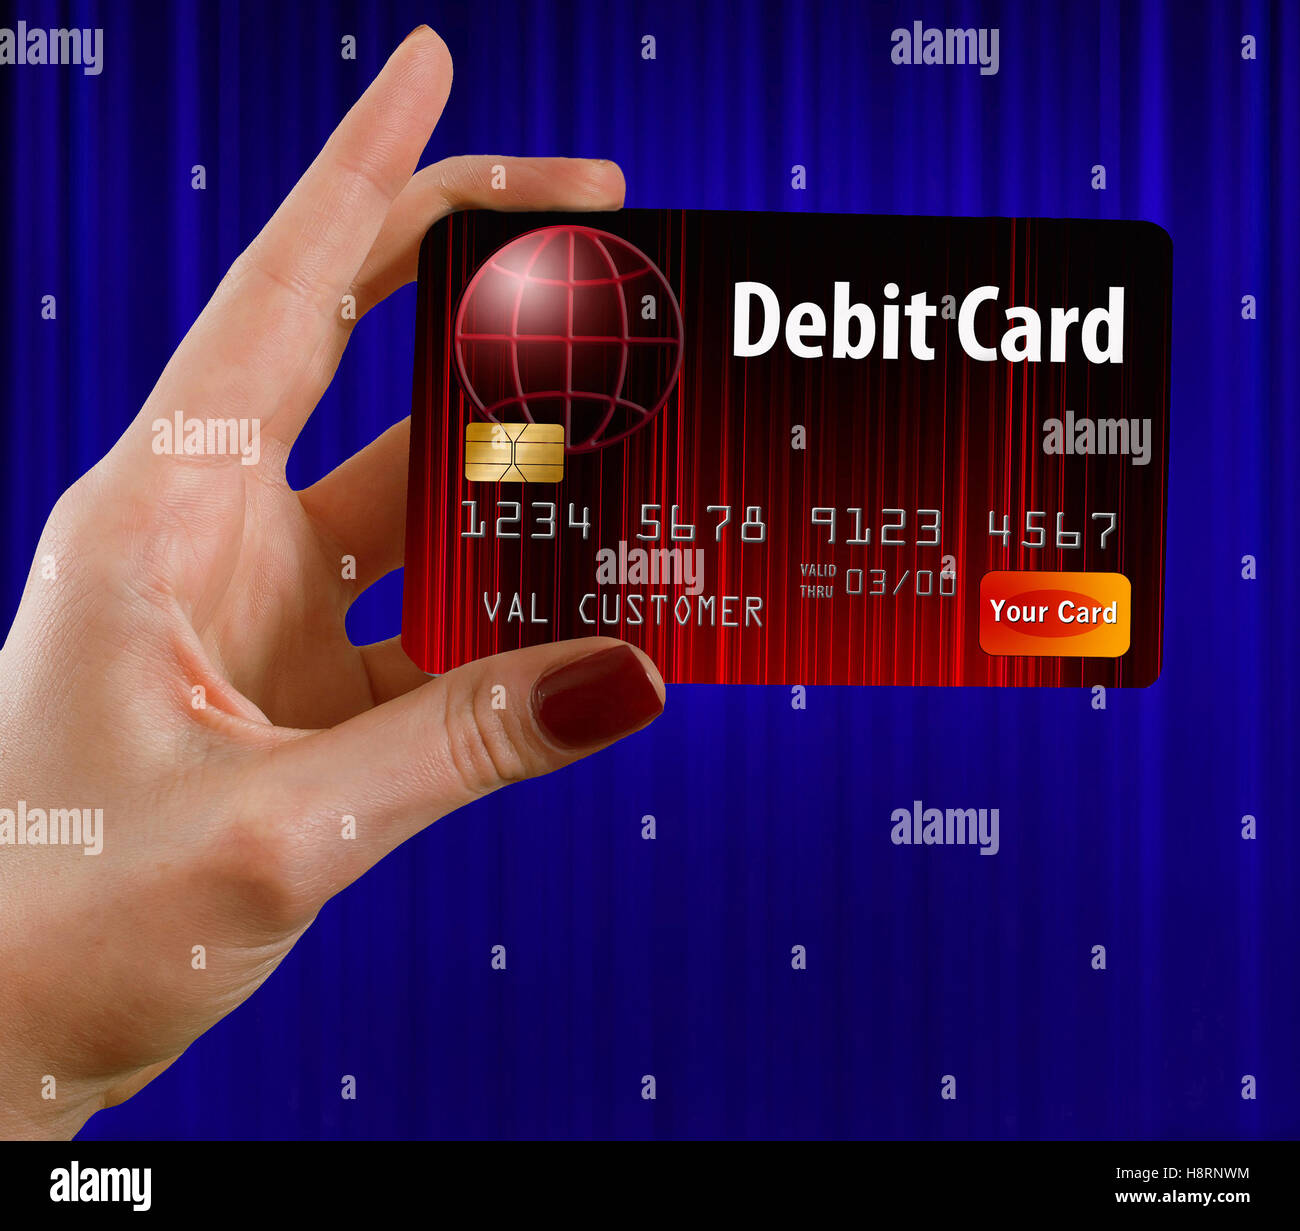 Una femmina di mano trattiene una carta di debito che è di colore rosso e nero. nella parte anteriore di una cortina di blu. Questa è una foto illustrazione combinando foto Foto Stock